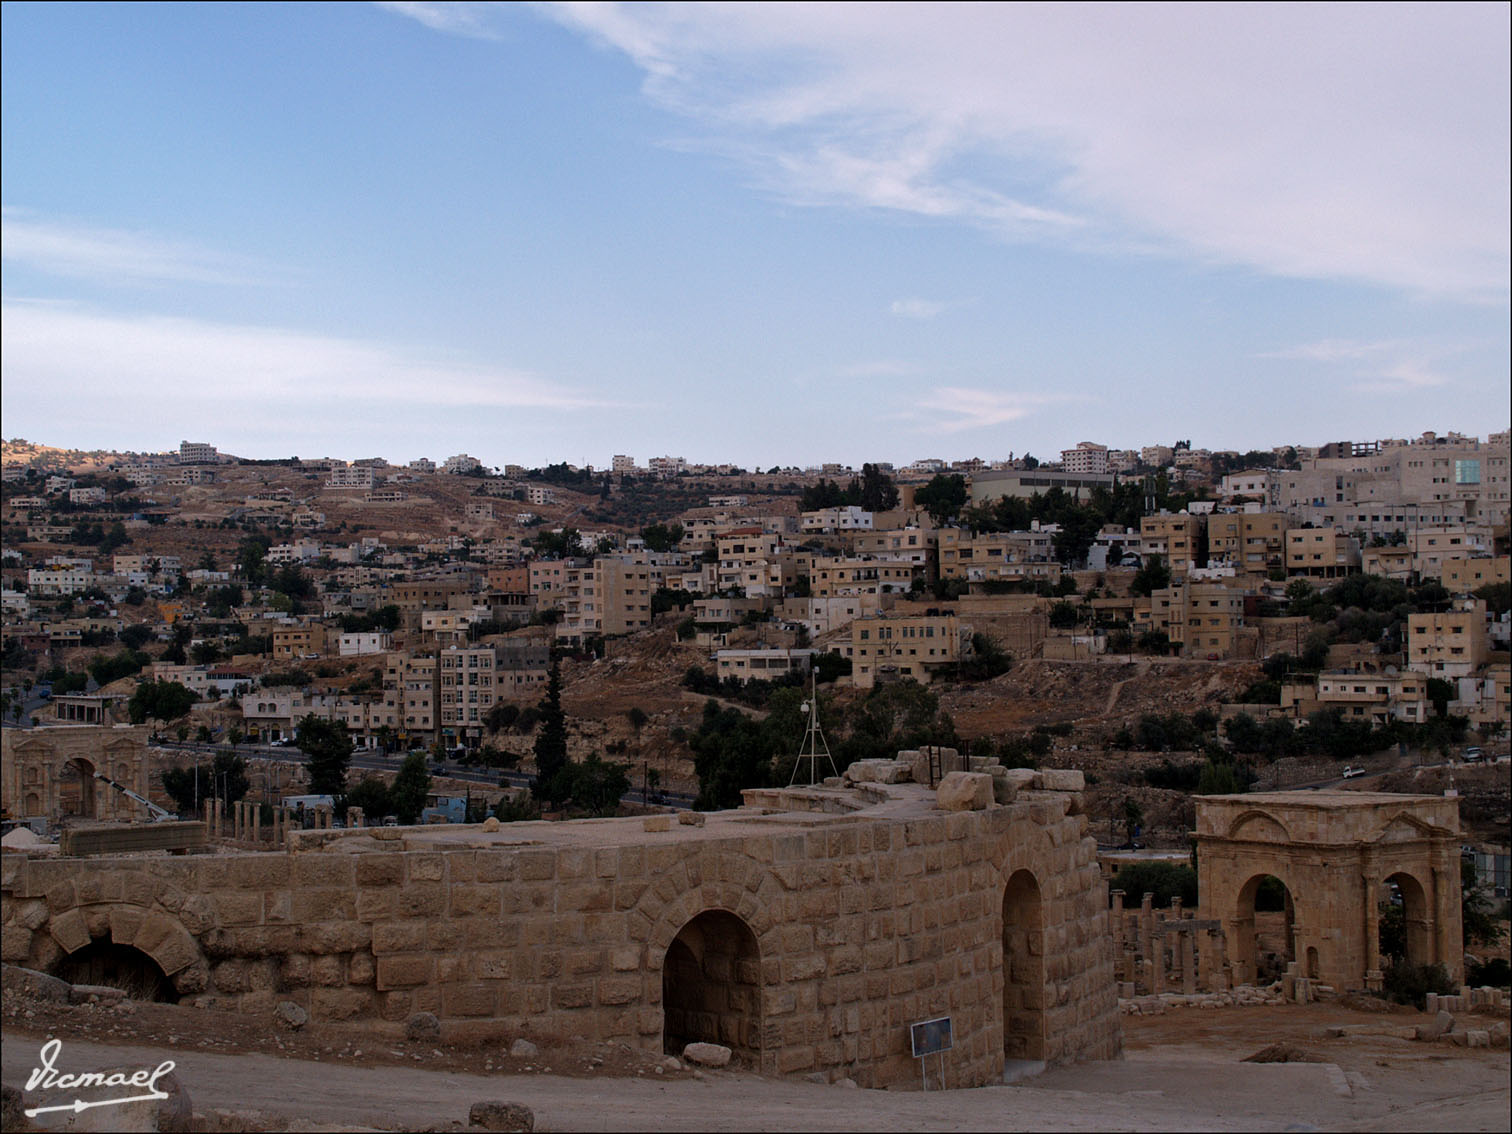 Foto: 090919-151 JERASH JORDANIA - Jerash, Jordania